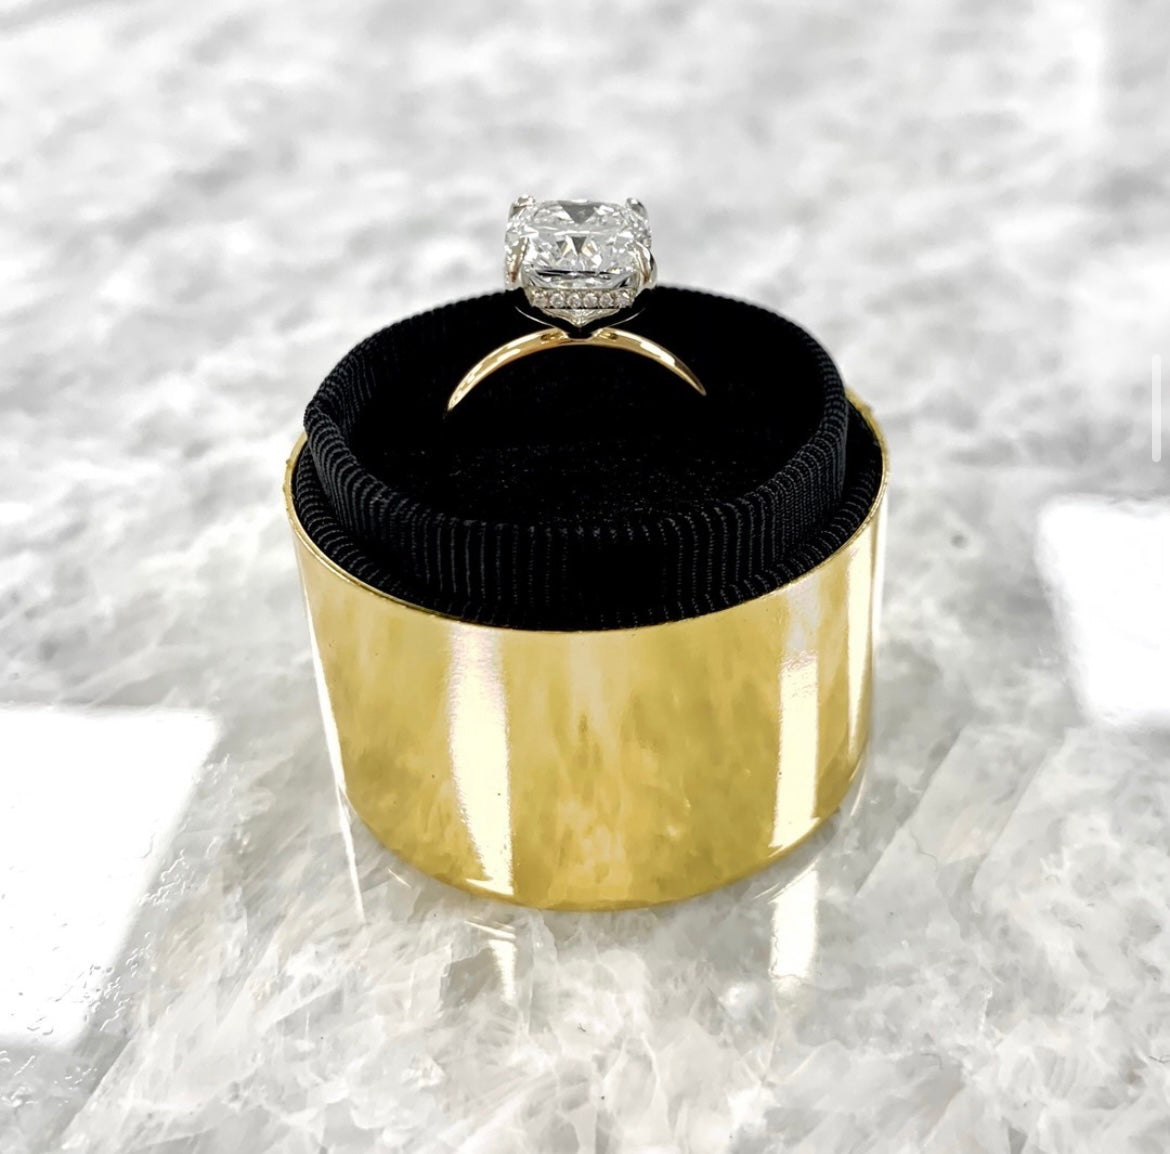 Gold diamond engagement rings for women